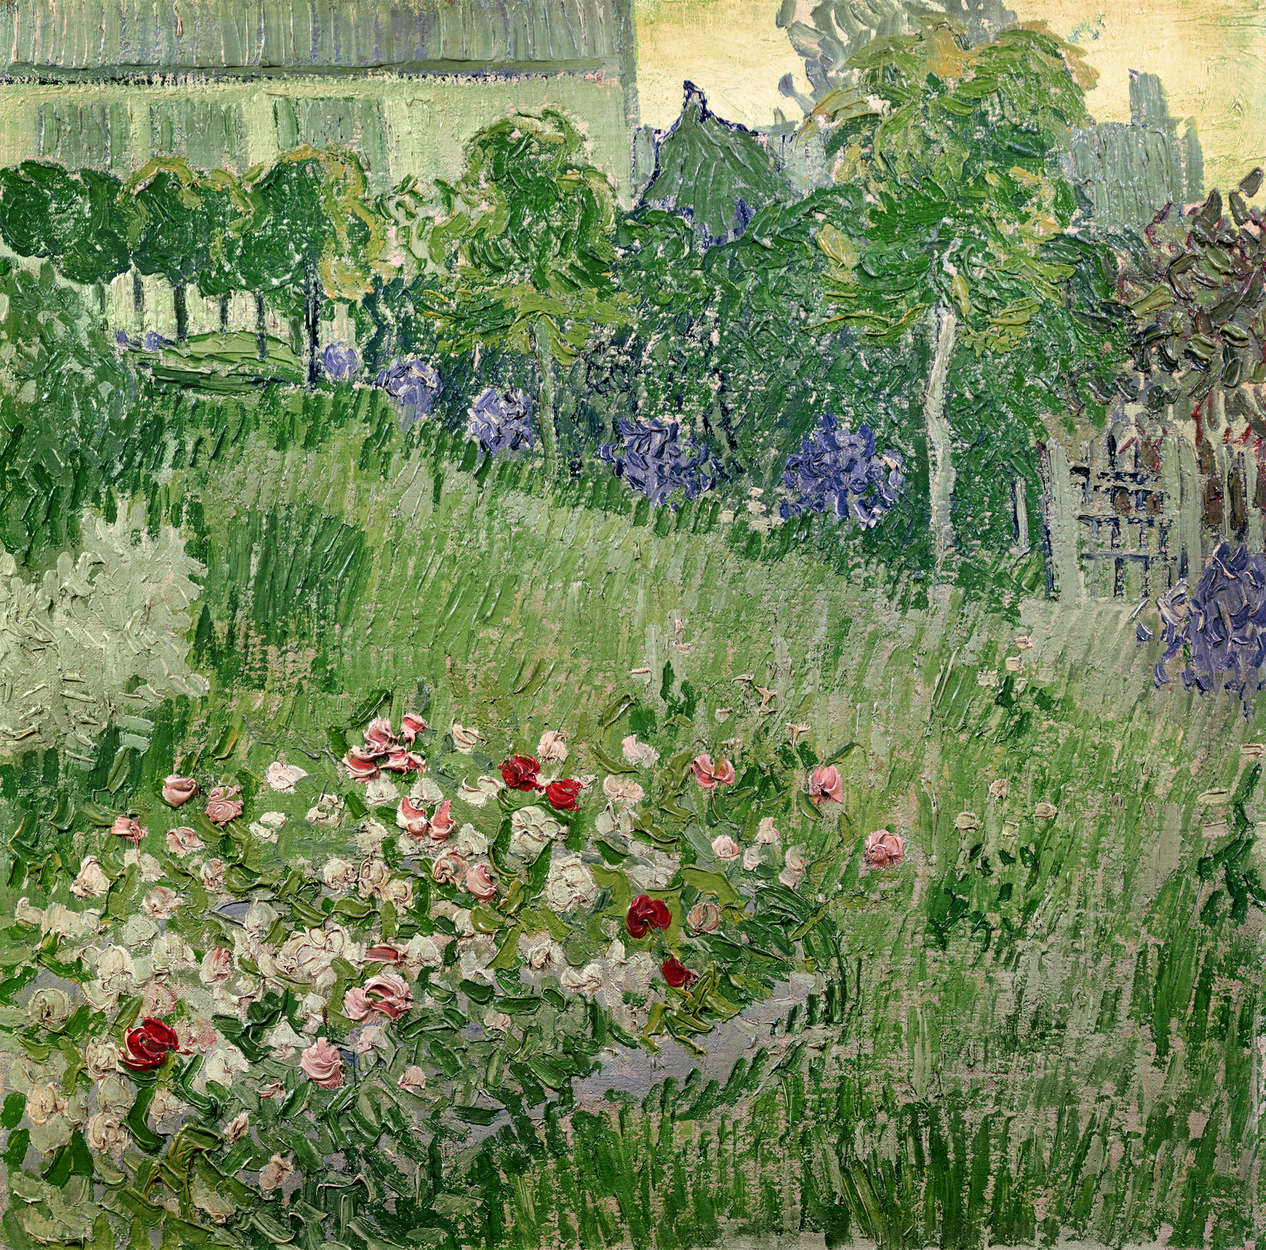             Il giardino di Daubigny", murale di Vincent van Gogh
        